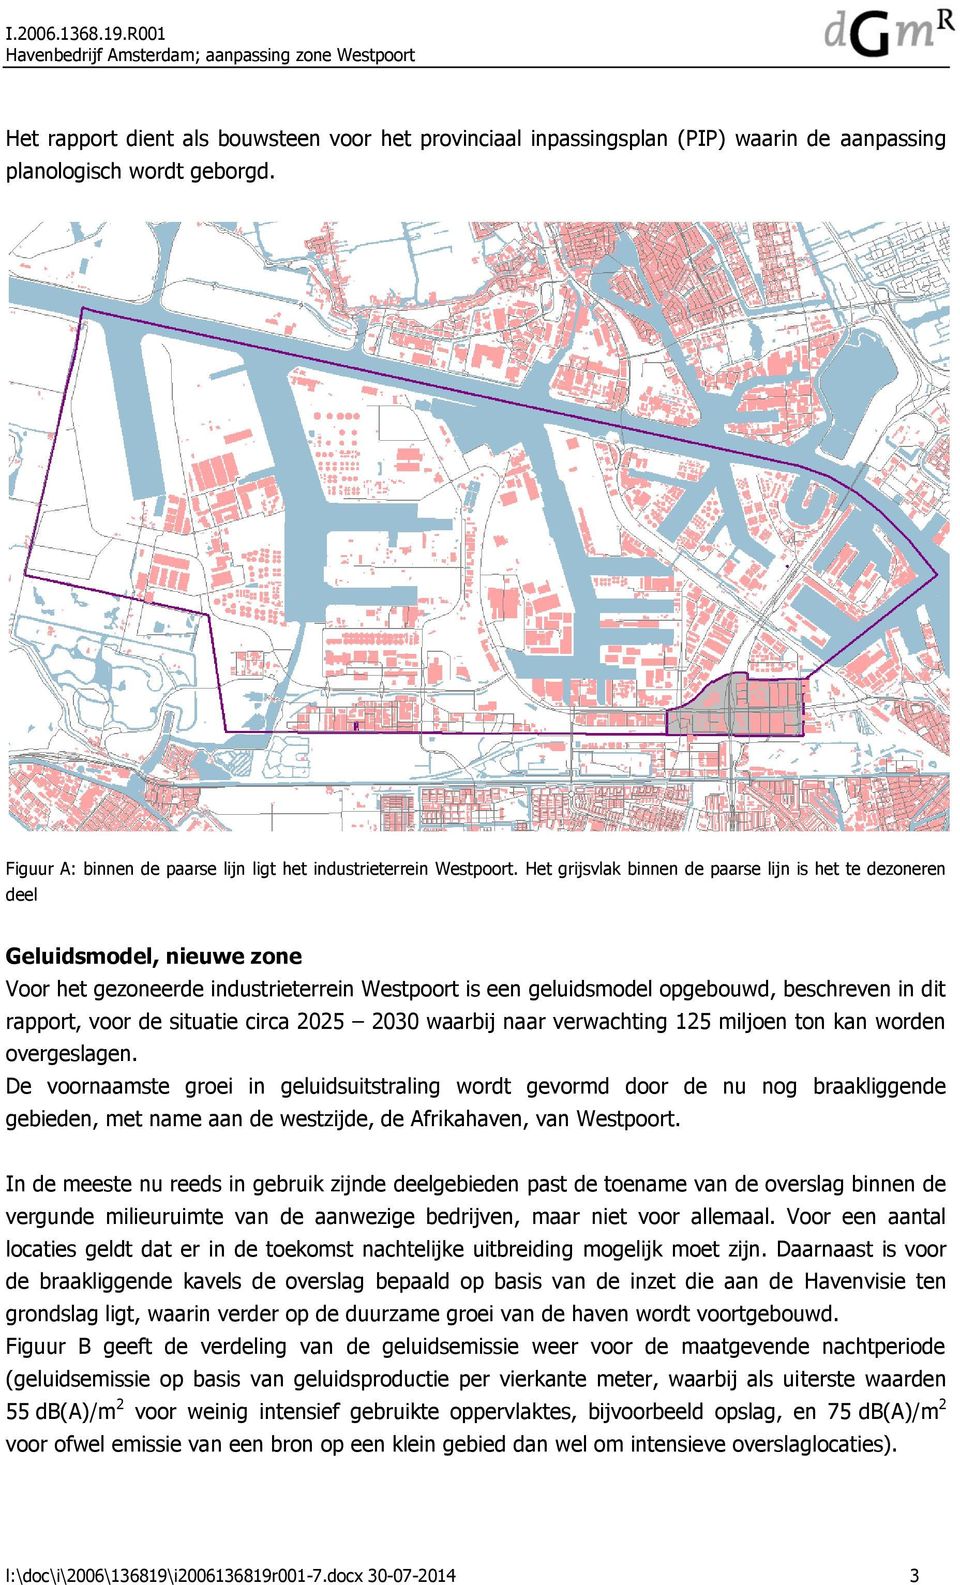 Het grijsvlak binnen de paarse lijn is het te dezoneren deel Geluidsmodel, nieuwe zone Voor het gezoneerde industrieterrein Westpoort is een geluidsmodel opgebouwd, beschreven in dit rapport, voor de